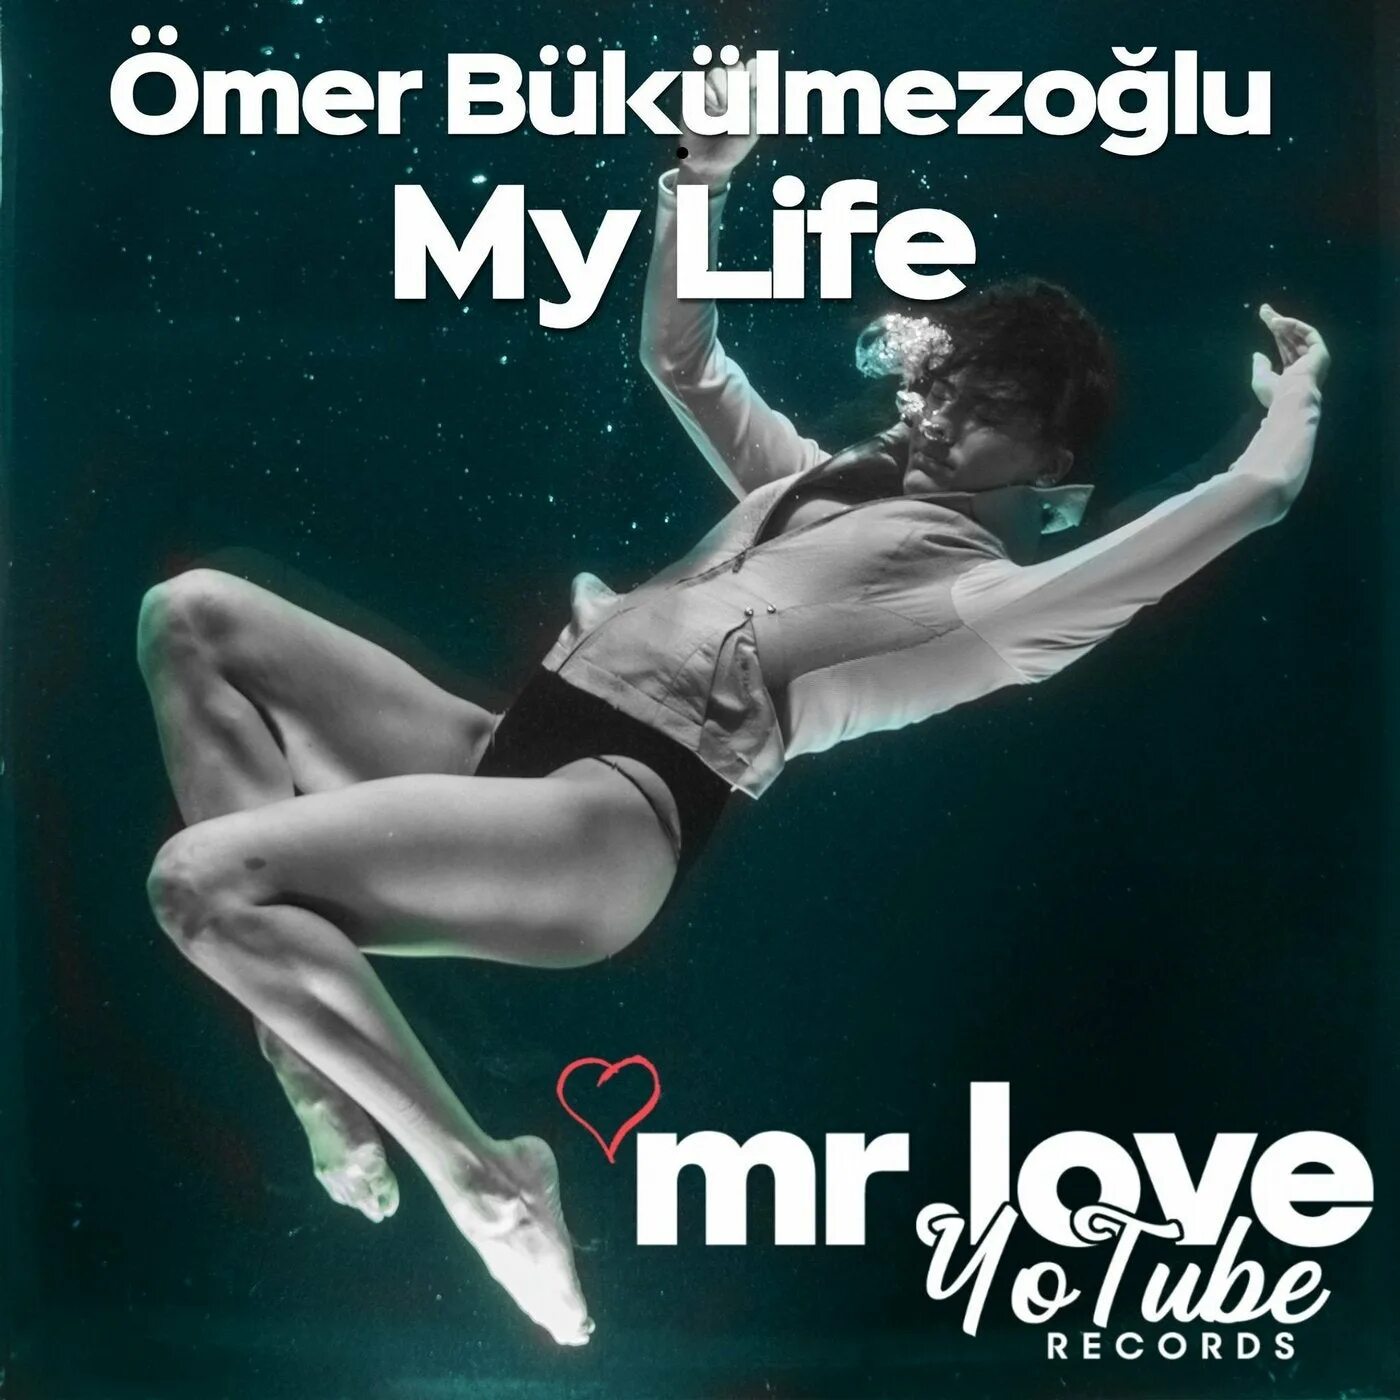 Roe pette bella. Омер букулмезоглу. Roe Omer Bukulmezoglu. Ömer Bükülmezoğlu исполнитель. My self от Ömer Bükülmezoğlu.